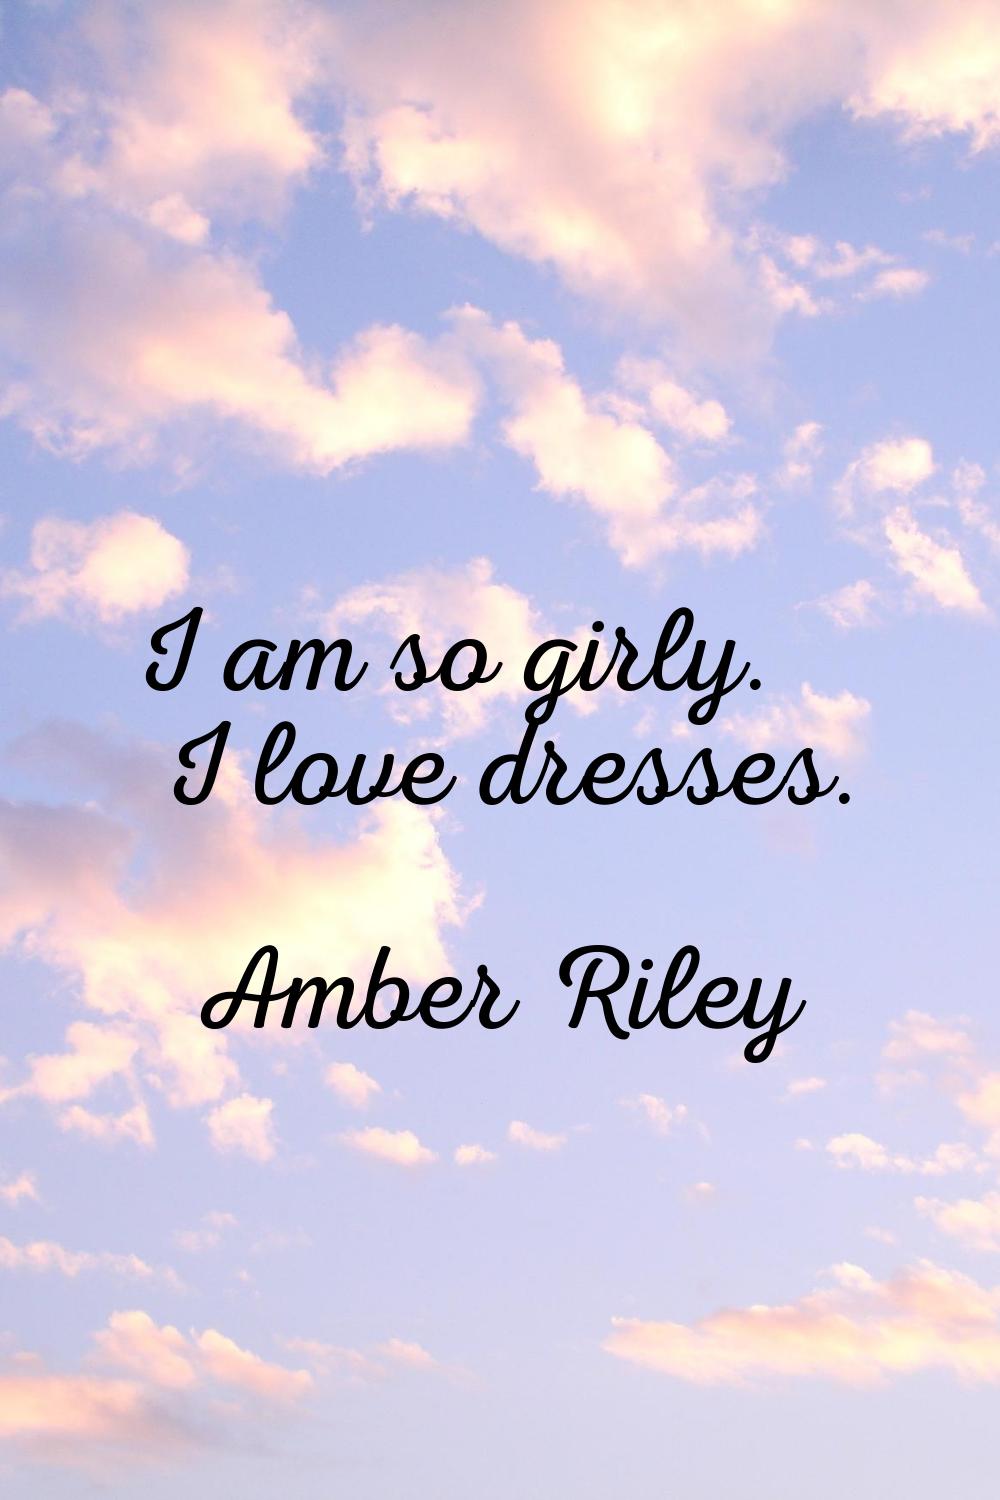 I am so girly. I love dresses.